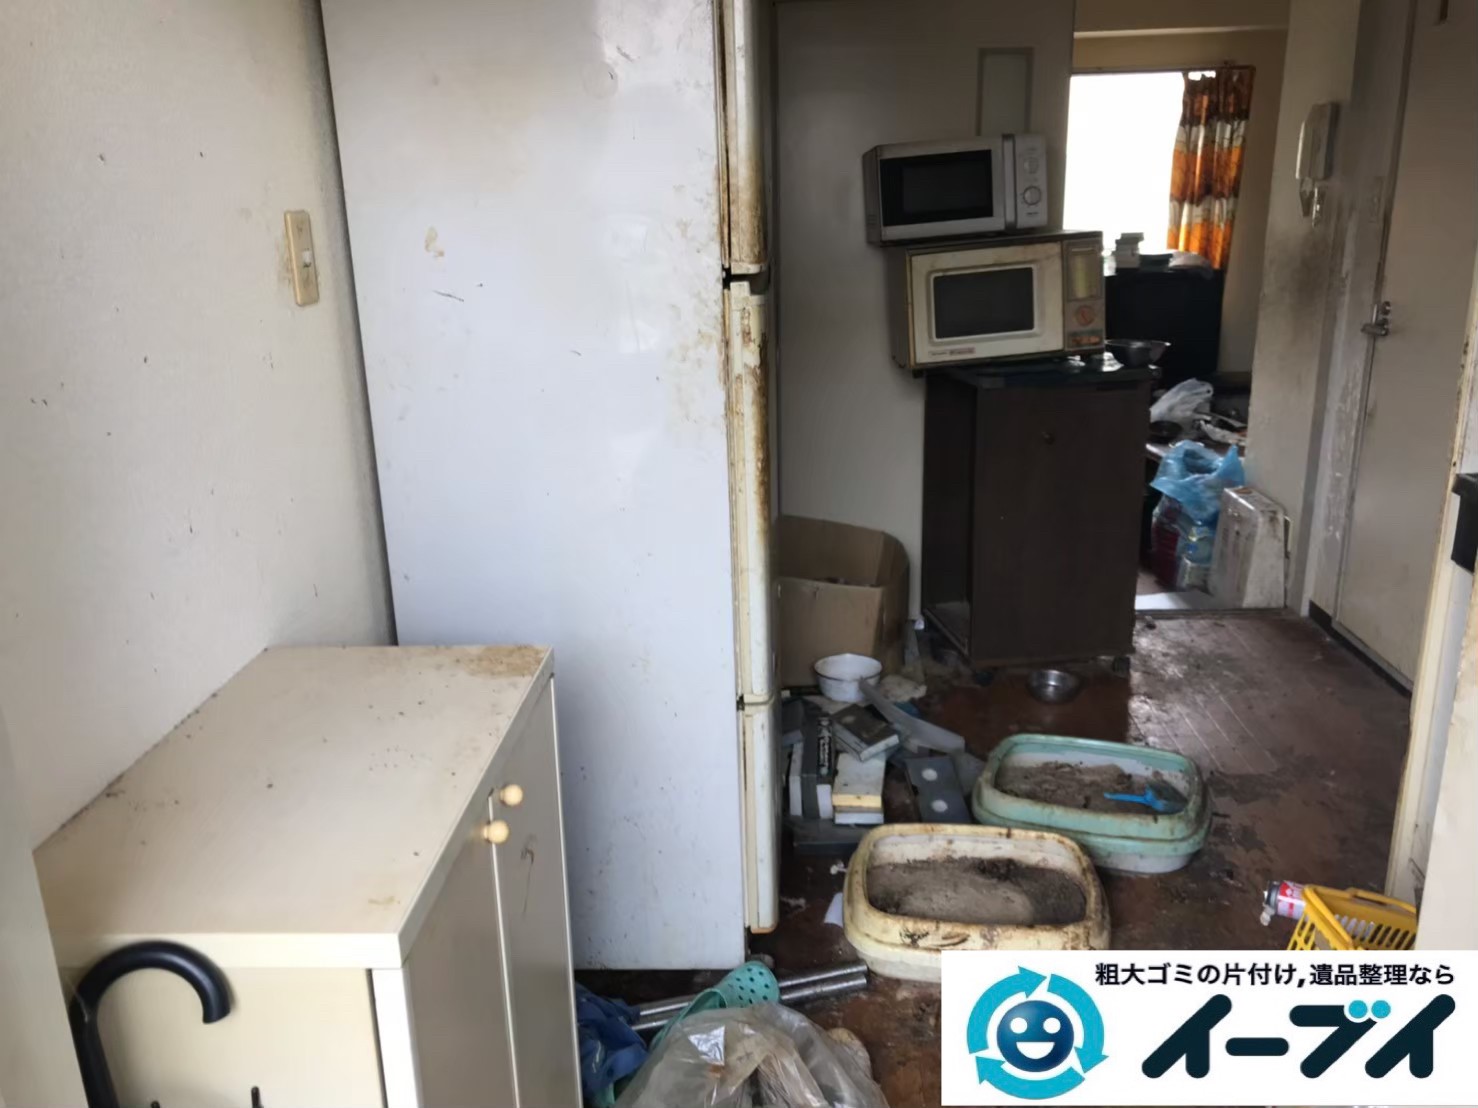 2019年7月29日大阪府大阪市住吉区で台所周りのお部屋の不用品回収。写真1